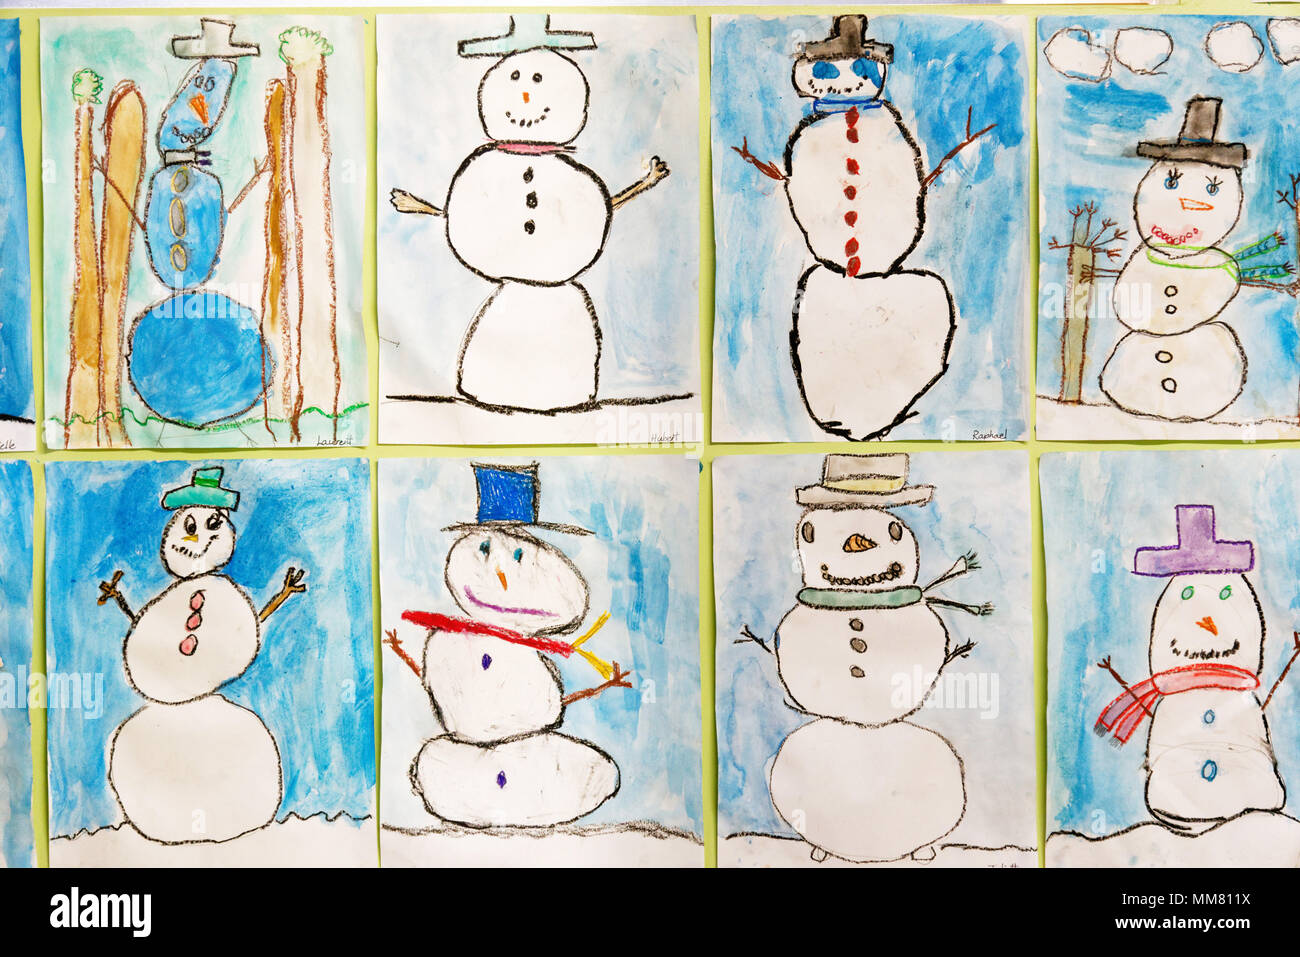 Œuvres d'art pour enfants sur le mur de leur école - images de bonhommes de neige Banque D'Images